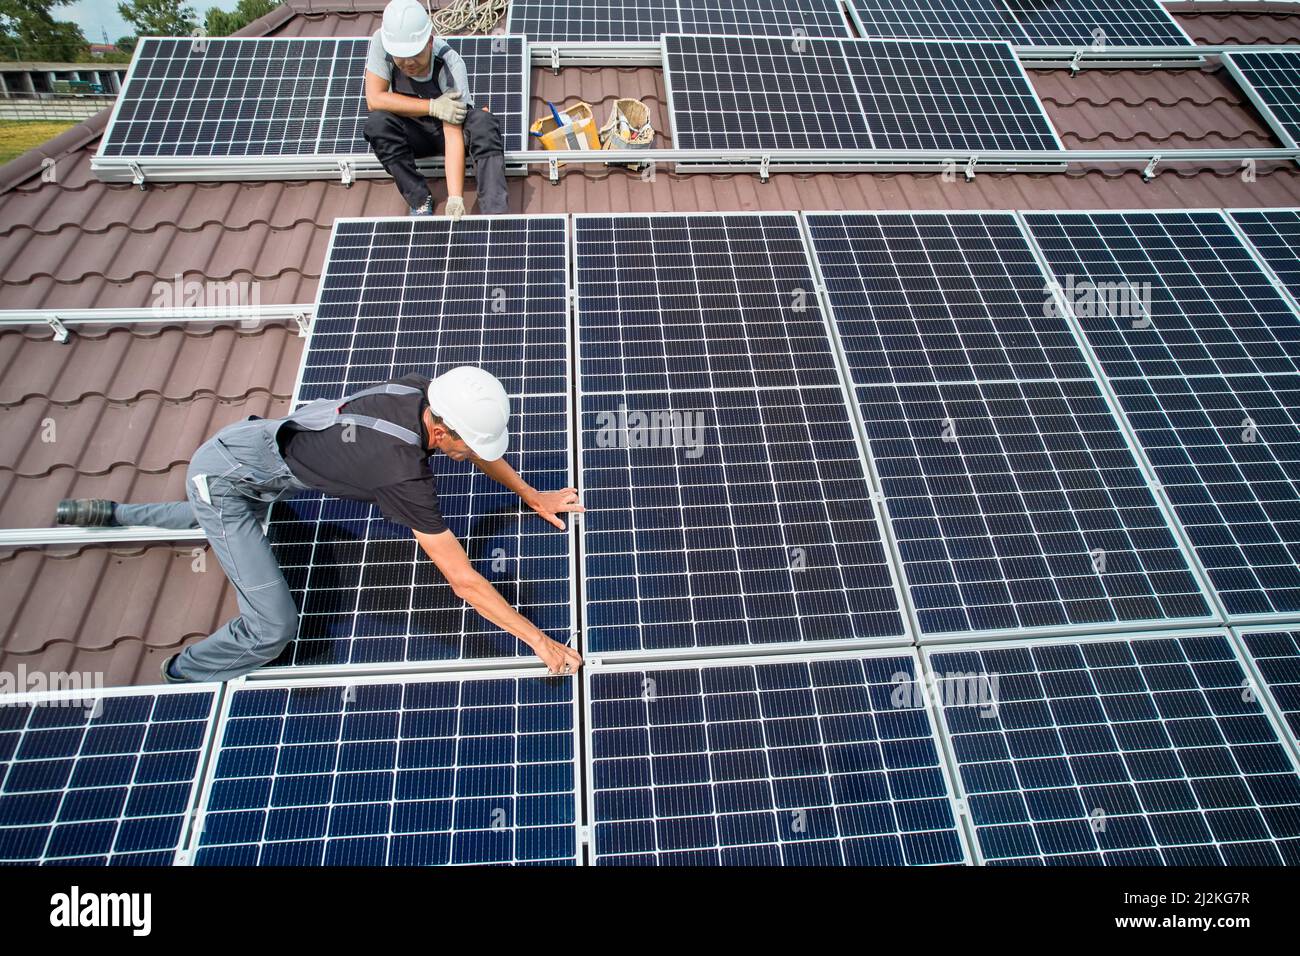 Hommes installateurs installation de modules solaires photovoltaïques sur le toit de la maison. Ingénieurs en casques de construction de panneaux solaires à l'extérieur. Concept d'énergie alternative et renouvelable. Vue aérienne. Banque D'Images